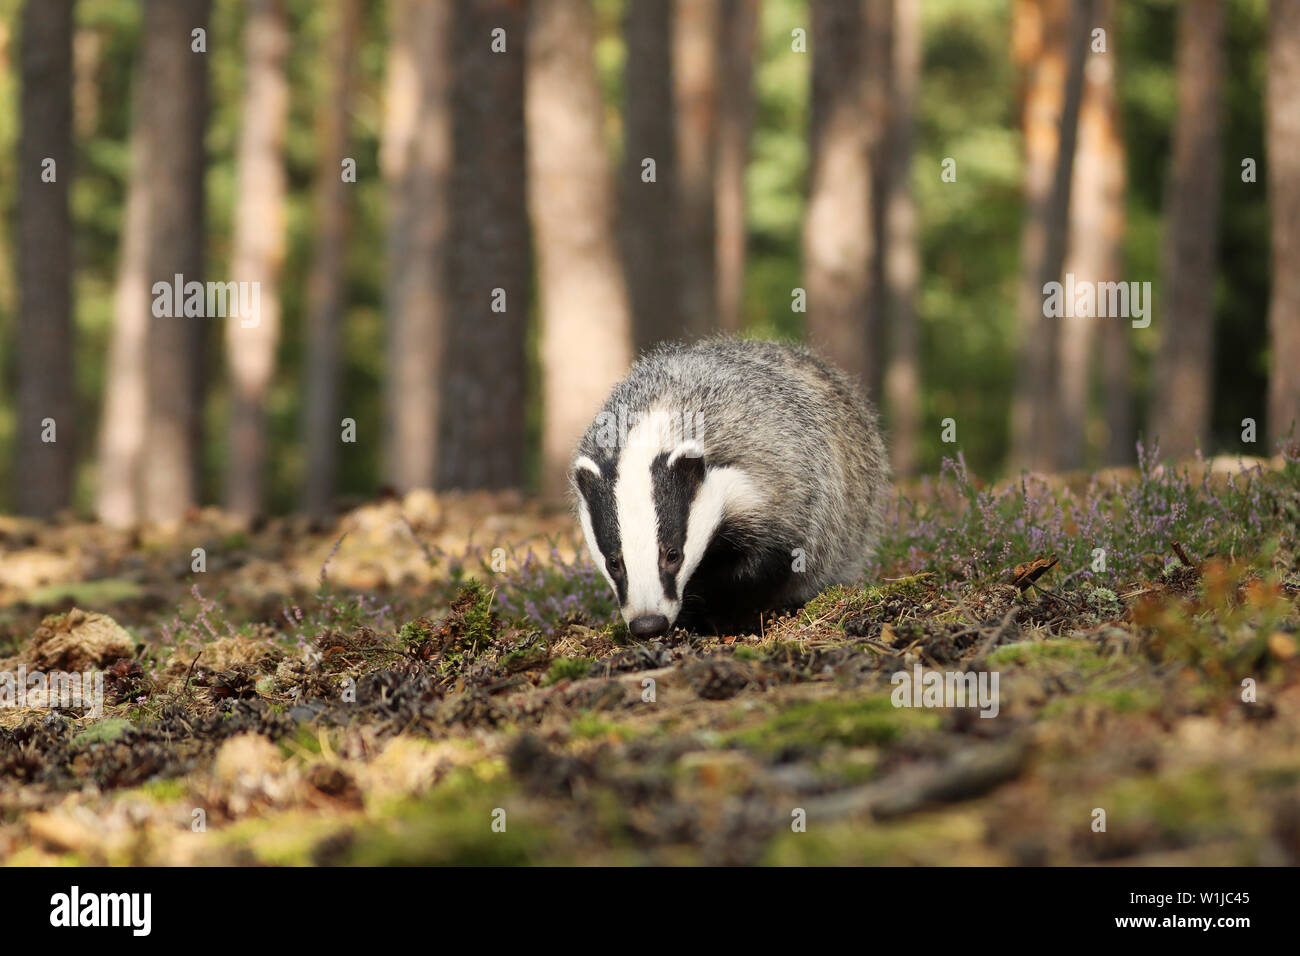 Badger in forest, animal nature habitat, Czech. Wildlife scene. Wild Badger, Meles meles Stock Photo